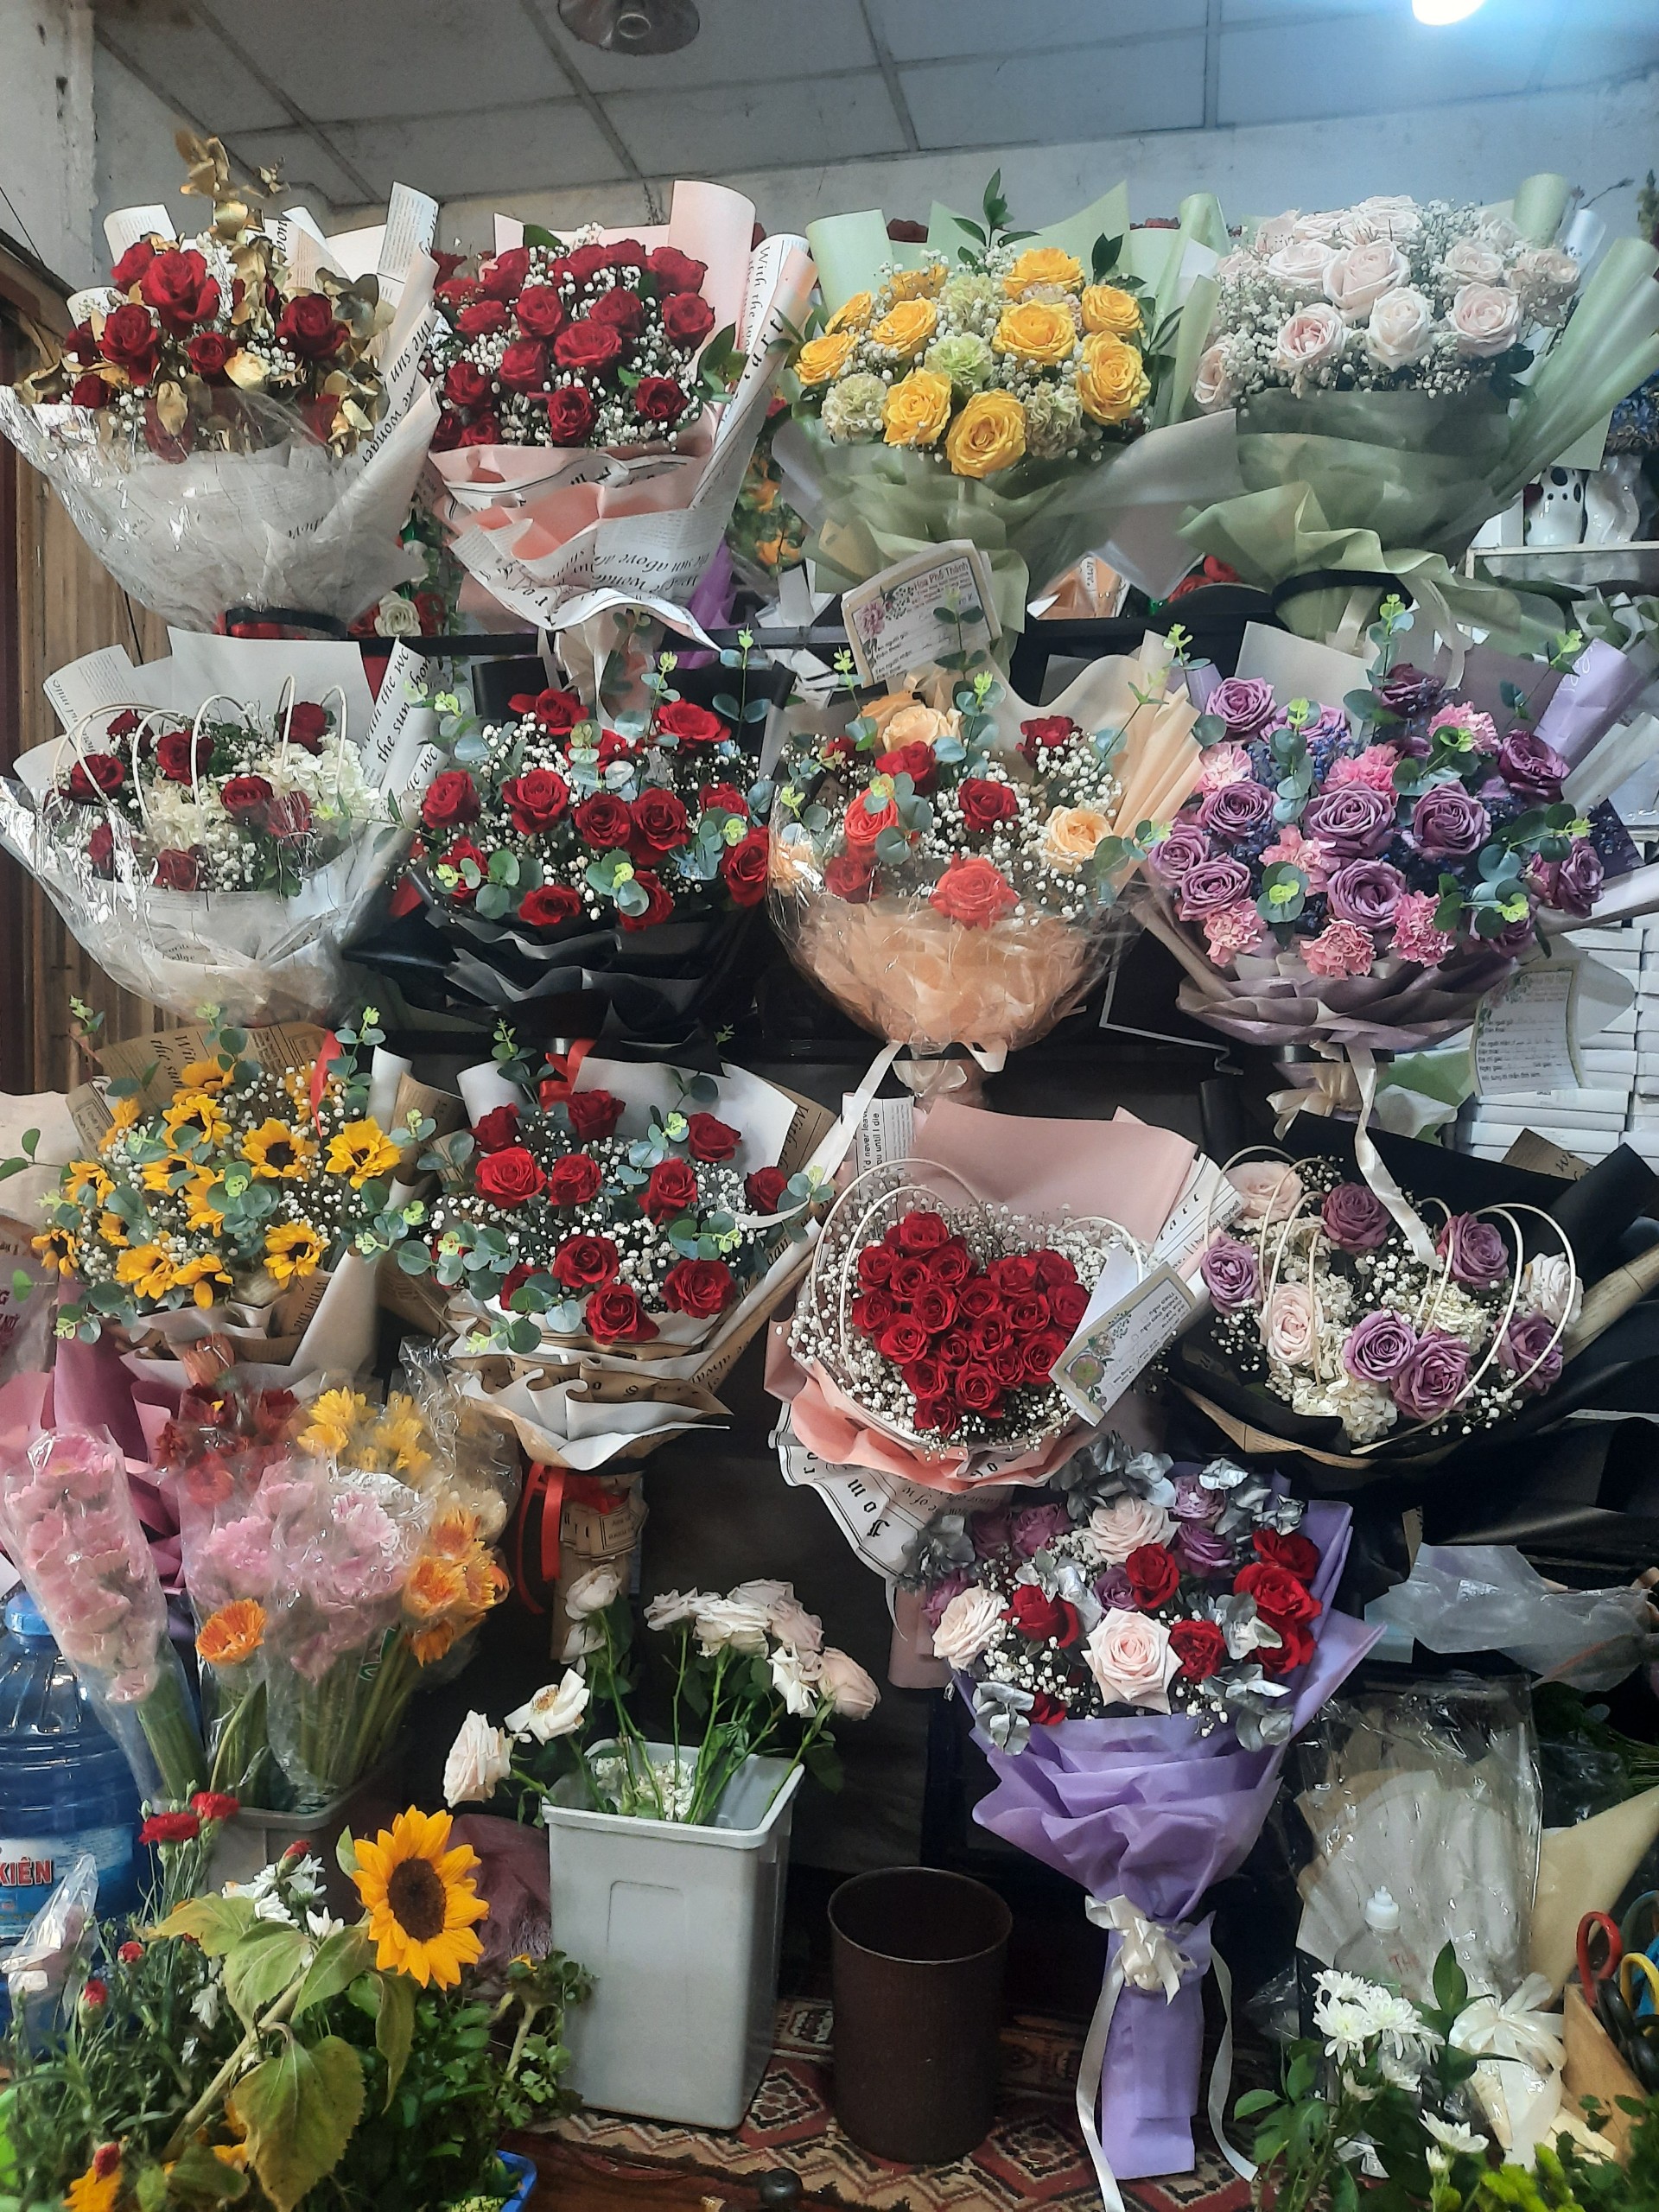 Gian hàng trưng bày hoa tại Shop Hoa Tươi Phường An Hòa Rạch Giá Kiên Giang- Shop hoa tươi Phố Thành Rạch Giá Kiên Giang.